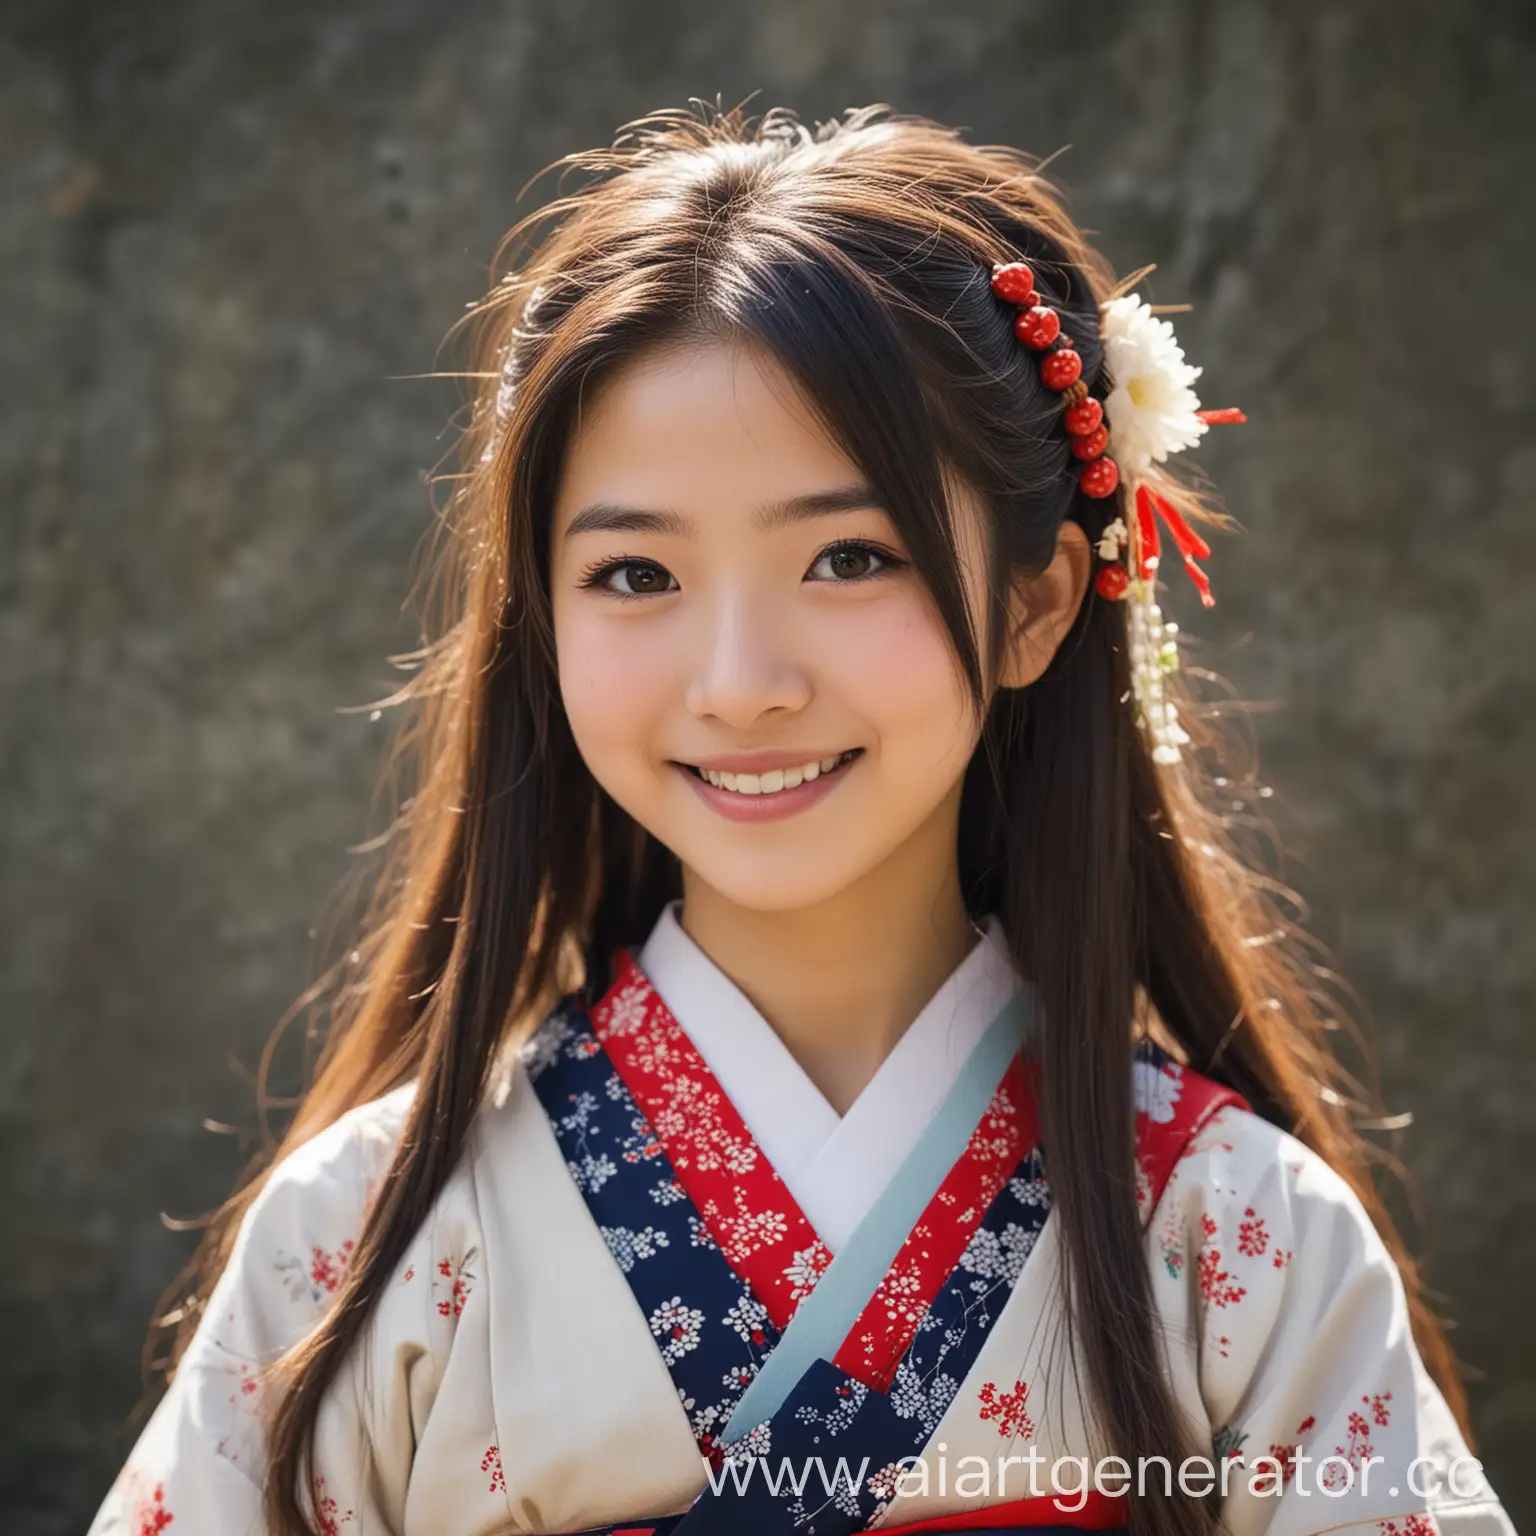 Японская девушка в национальной одежде с длинными волосами улыбается